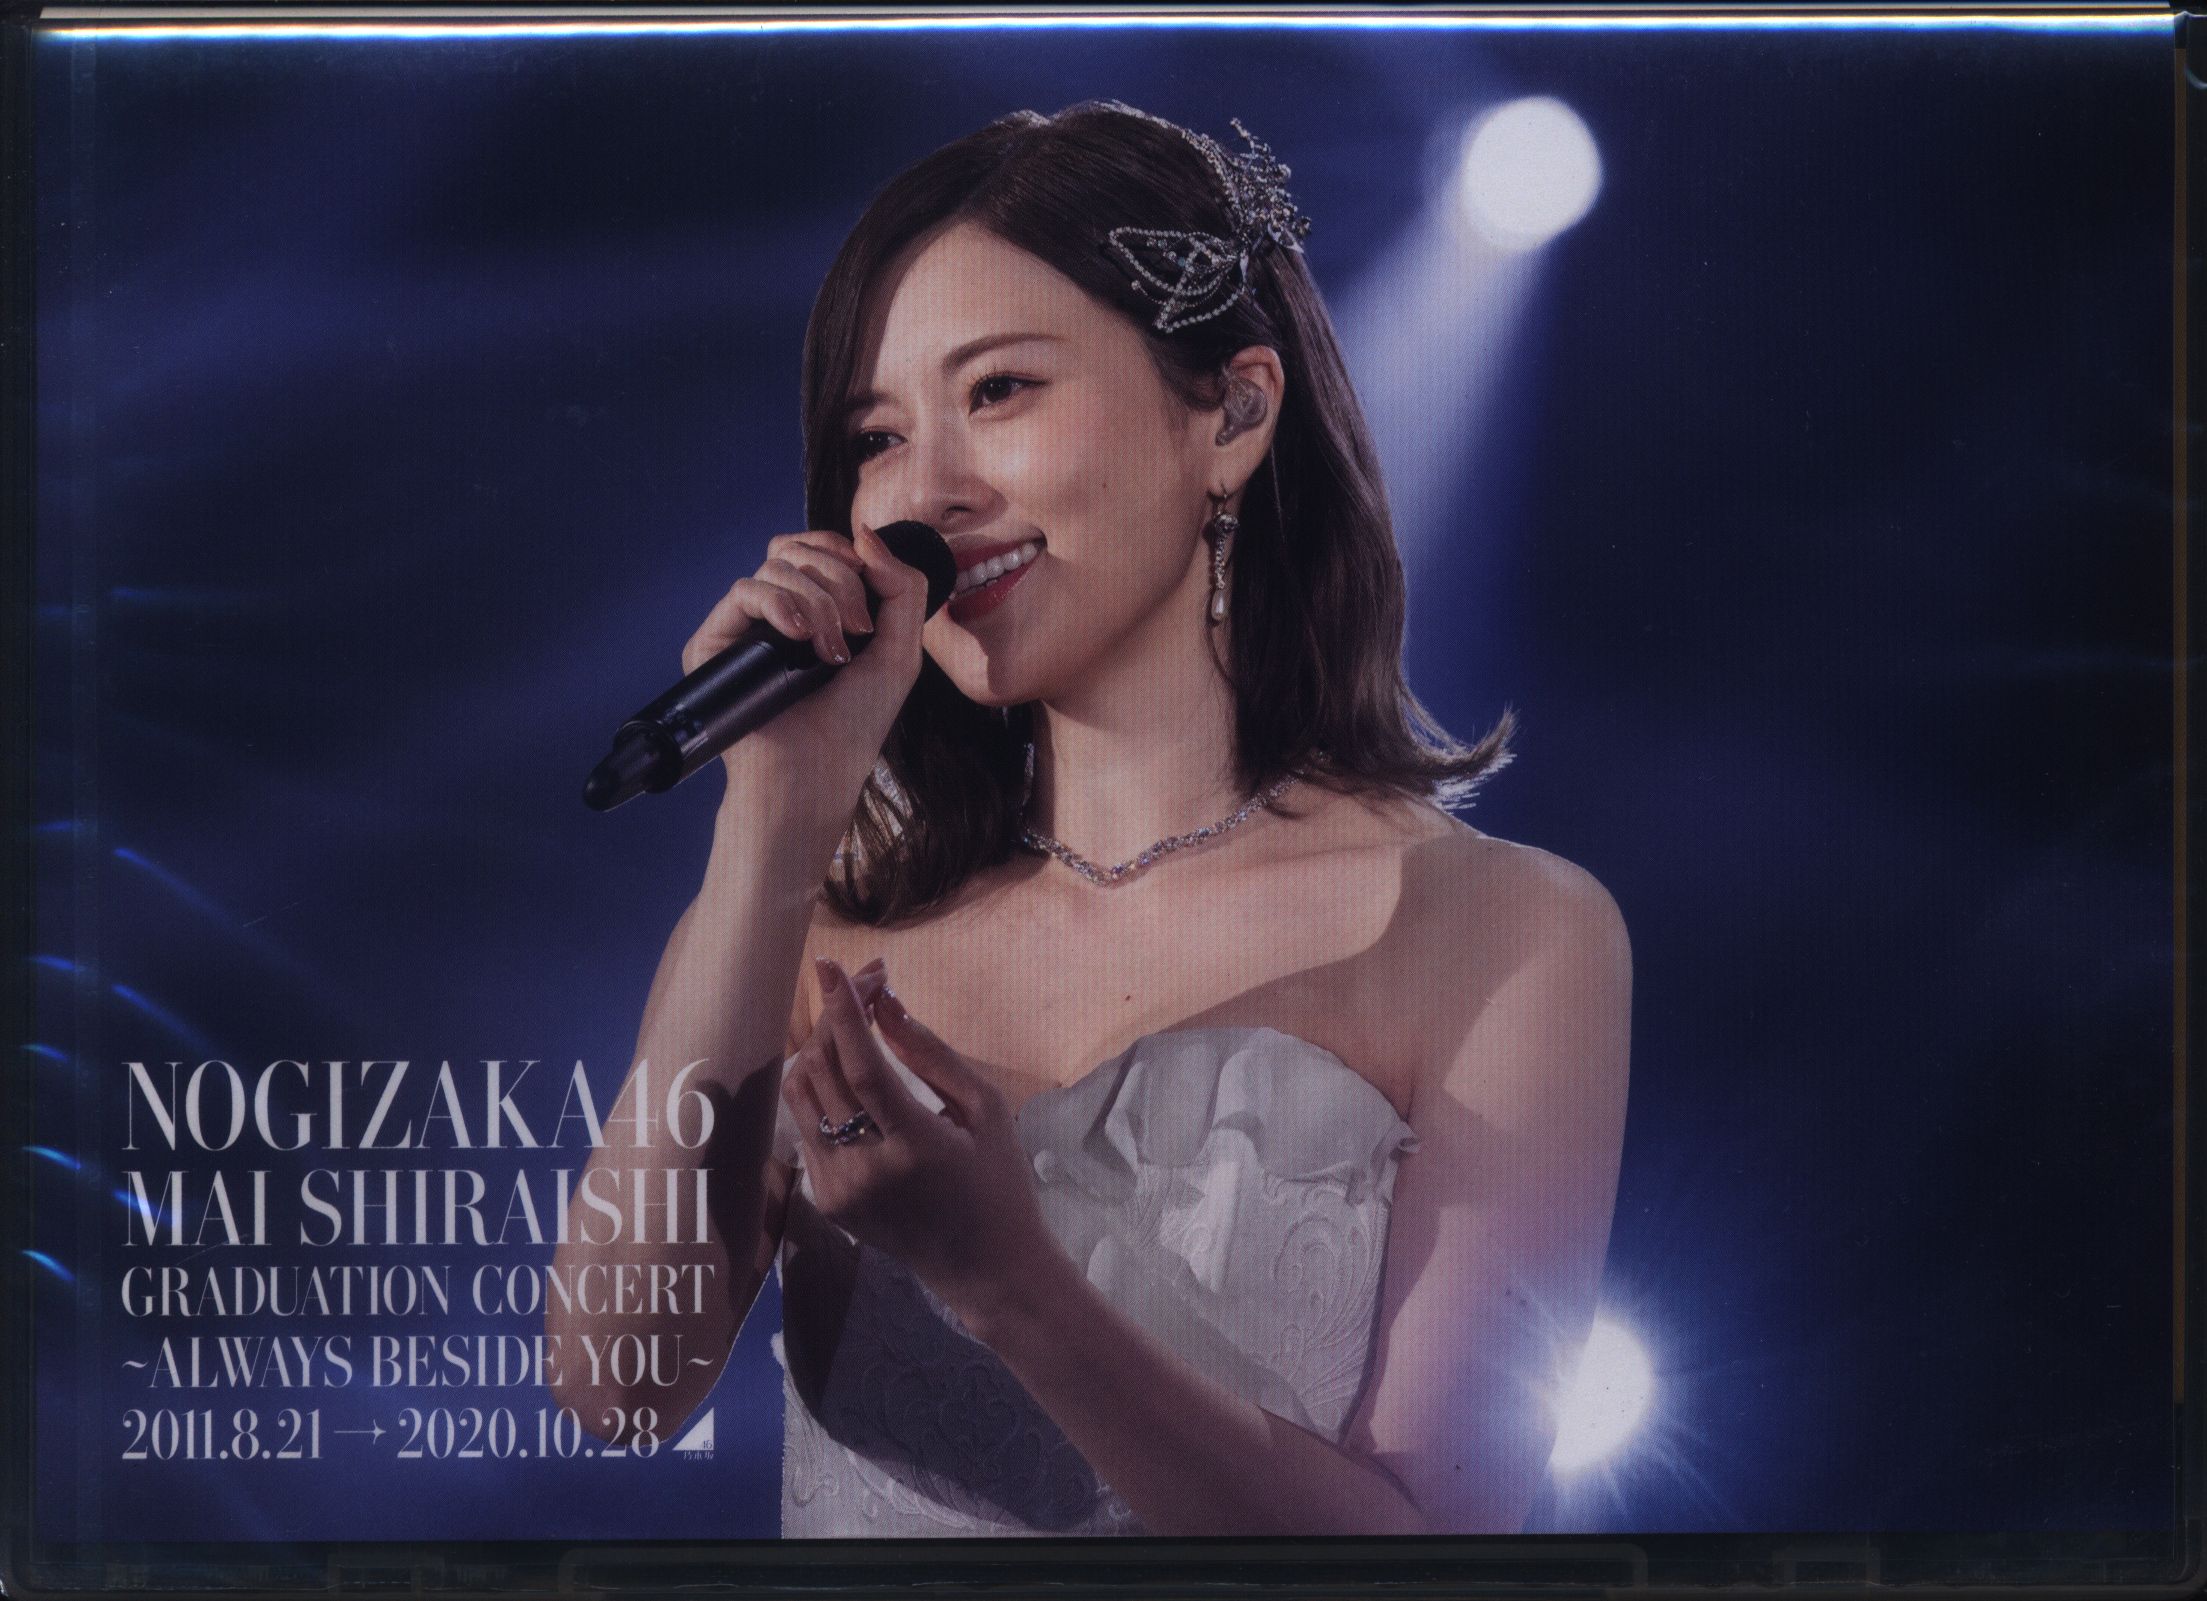 乃木坂46 Mai Shiraishi Graduation Concert - ミュージック